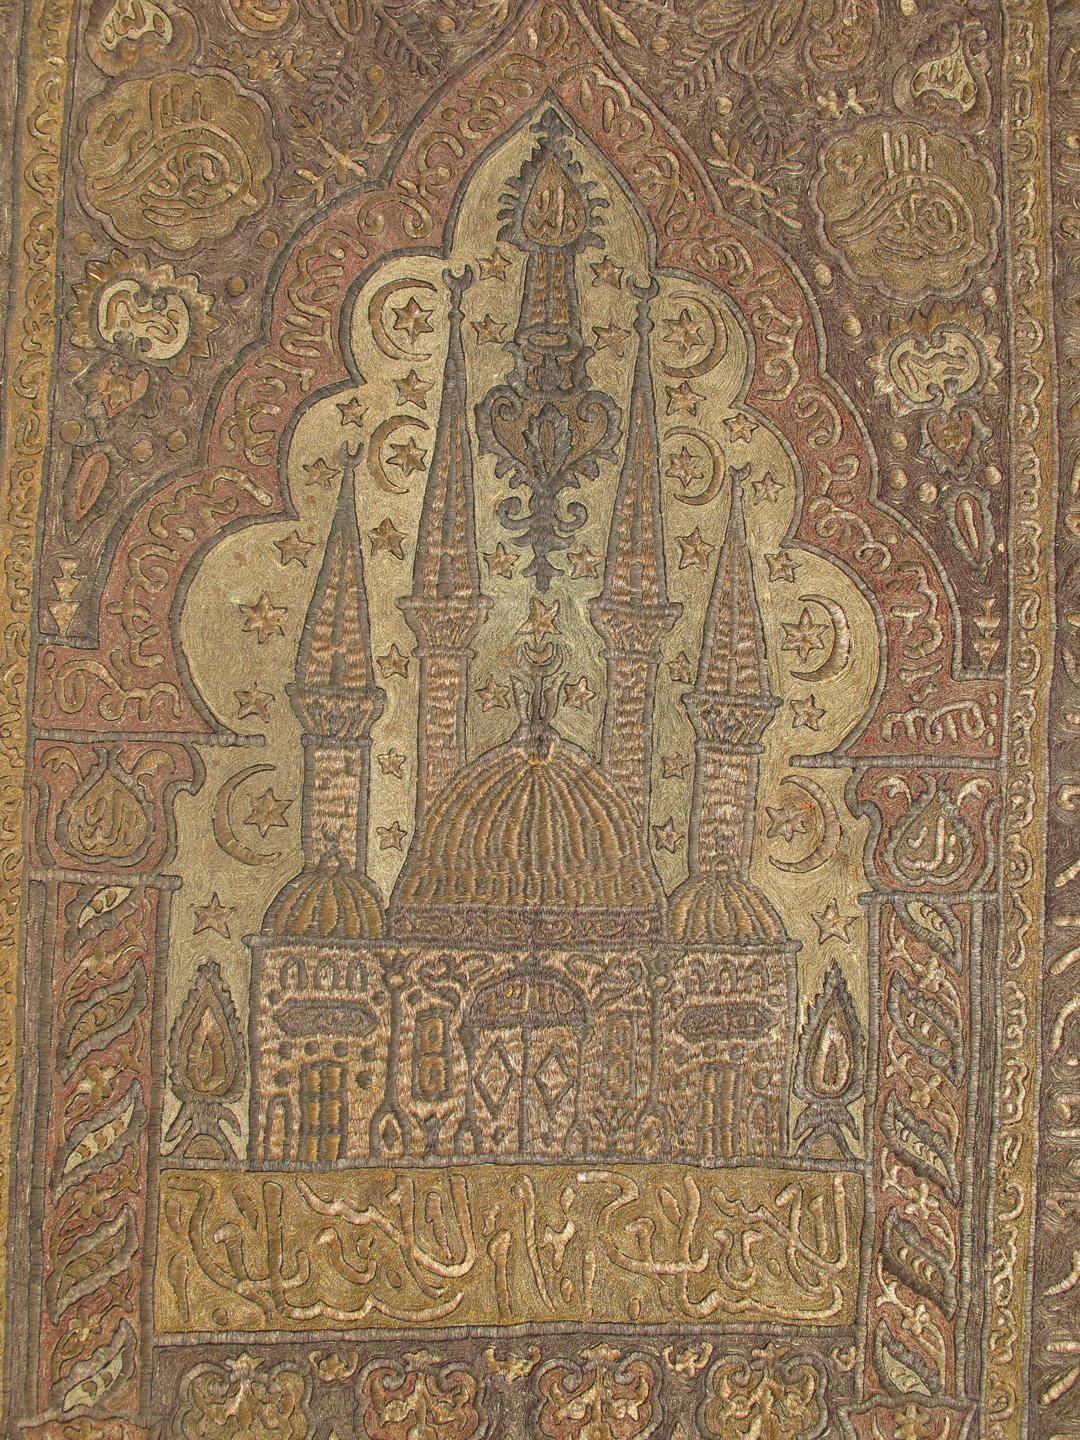 Gebetsteppich aus dem späten 18. Jahrhundert aus der osmanischen Zeit in Gold und Metall. Rug/C-0401. Dieser erstaunliche Teppich aus dem späten 18. und frühen 19. Jahrhundert stammt aus der Zeit des Osmanischen Reiches. Dieser Teppich wurde als